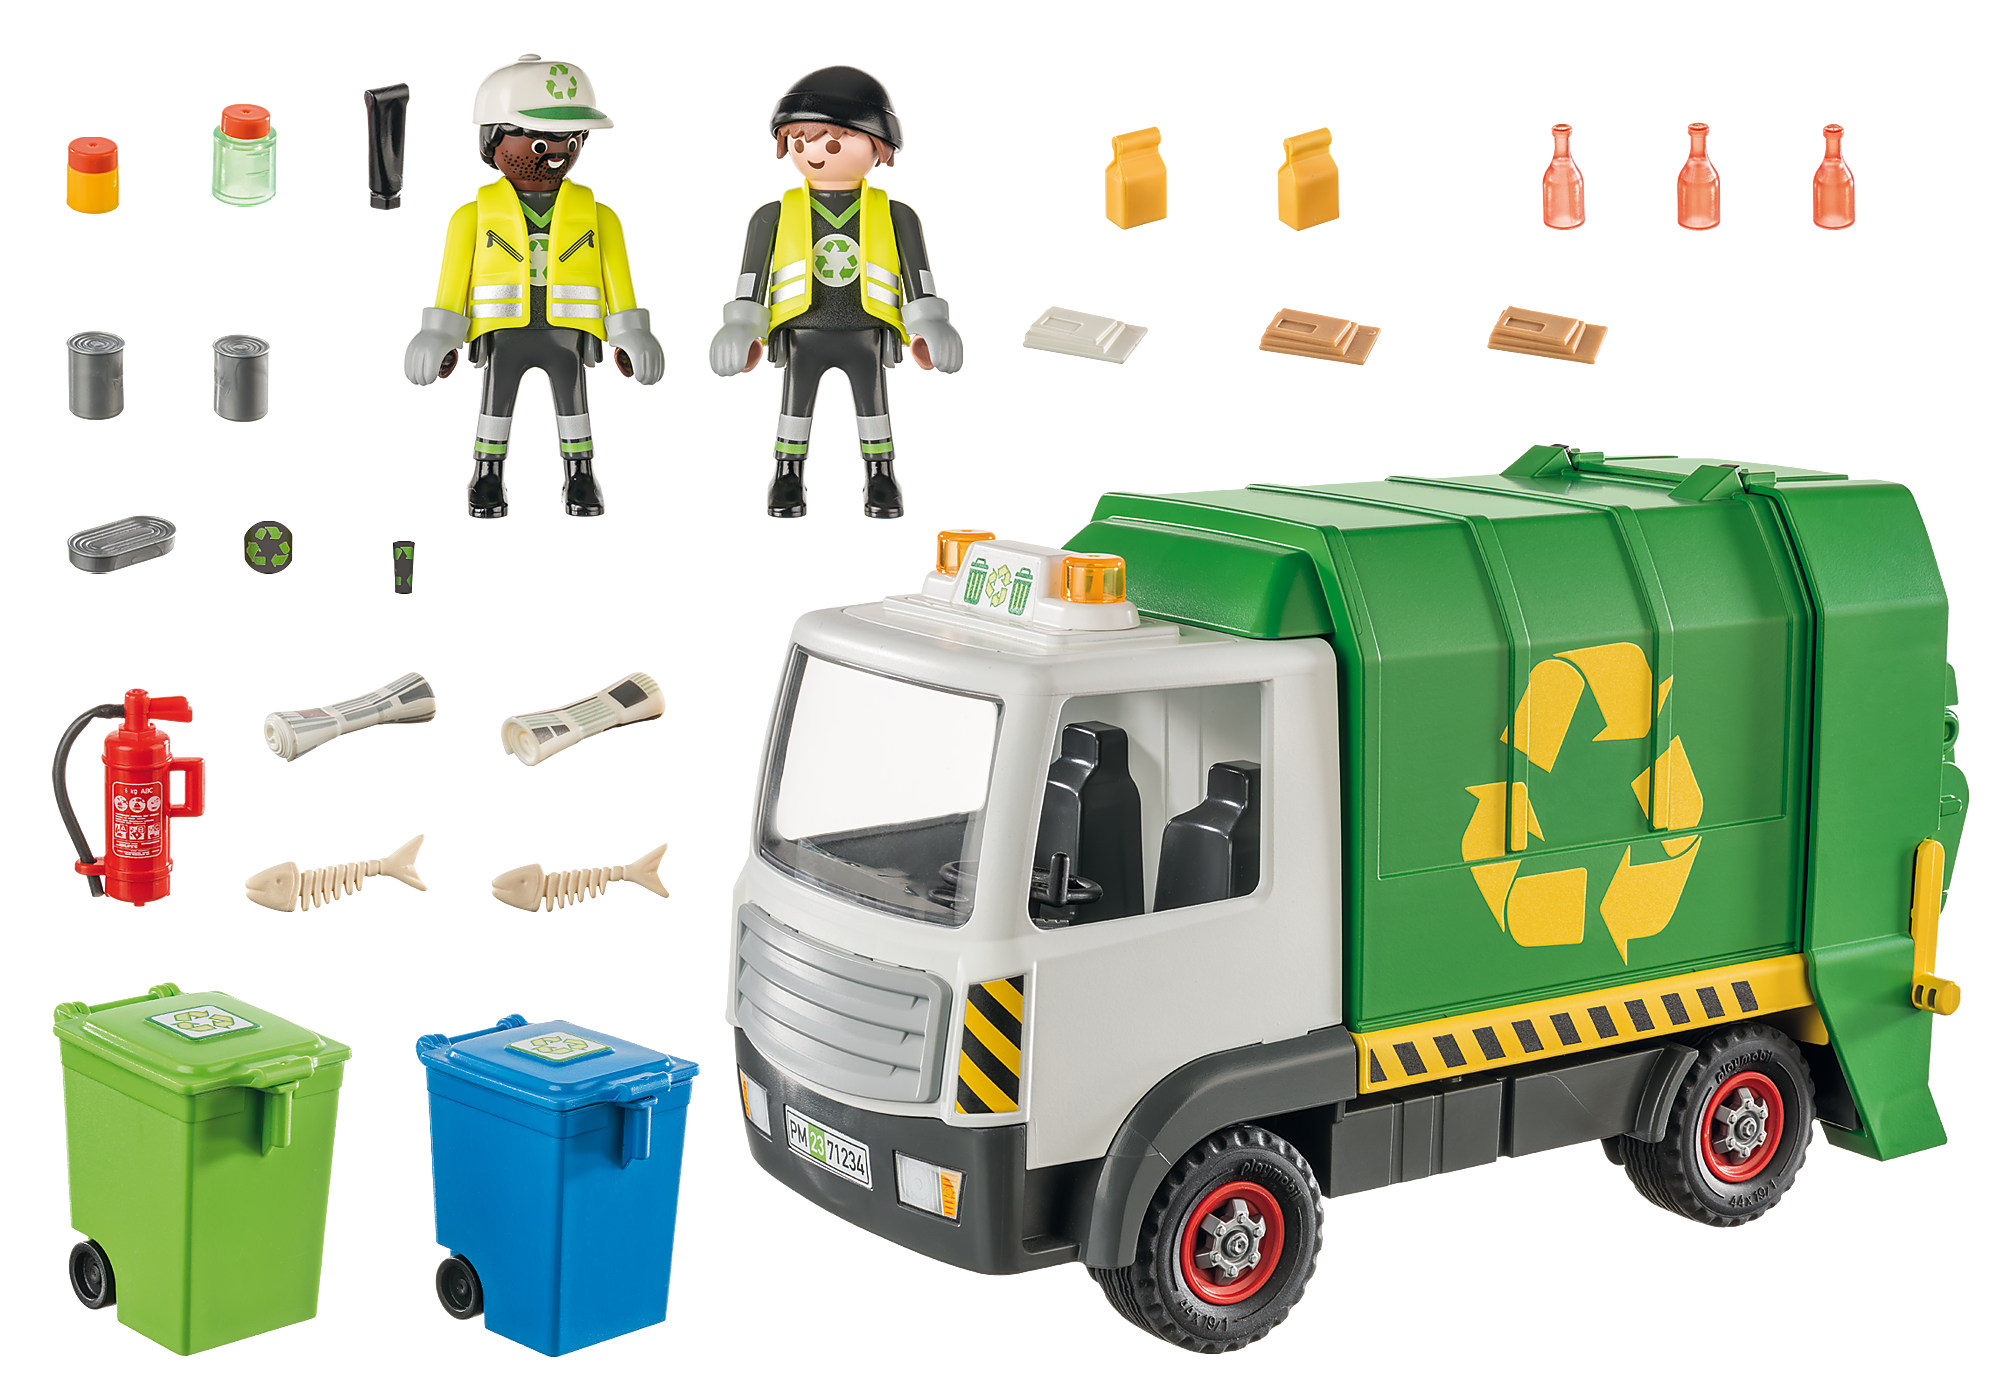 Playmobil Camion de recyclage des ordures 70200